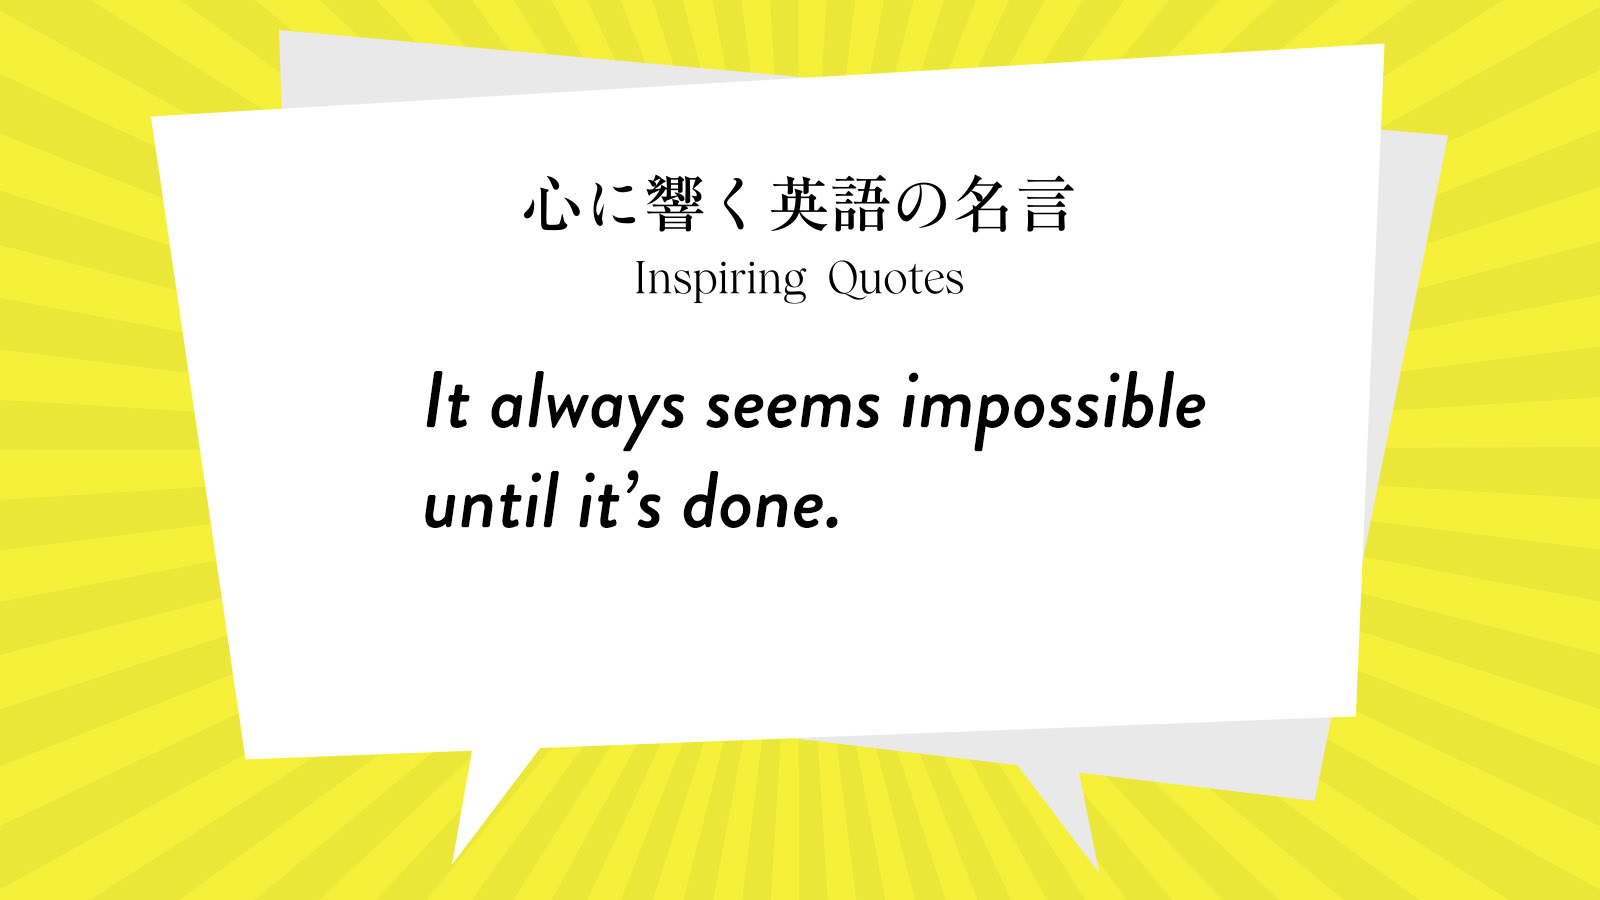 今週の名言 “It always seems impossible until it’s done.” | Inspiring Quotes: 心に響く英語の名言